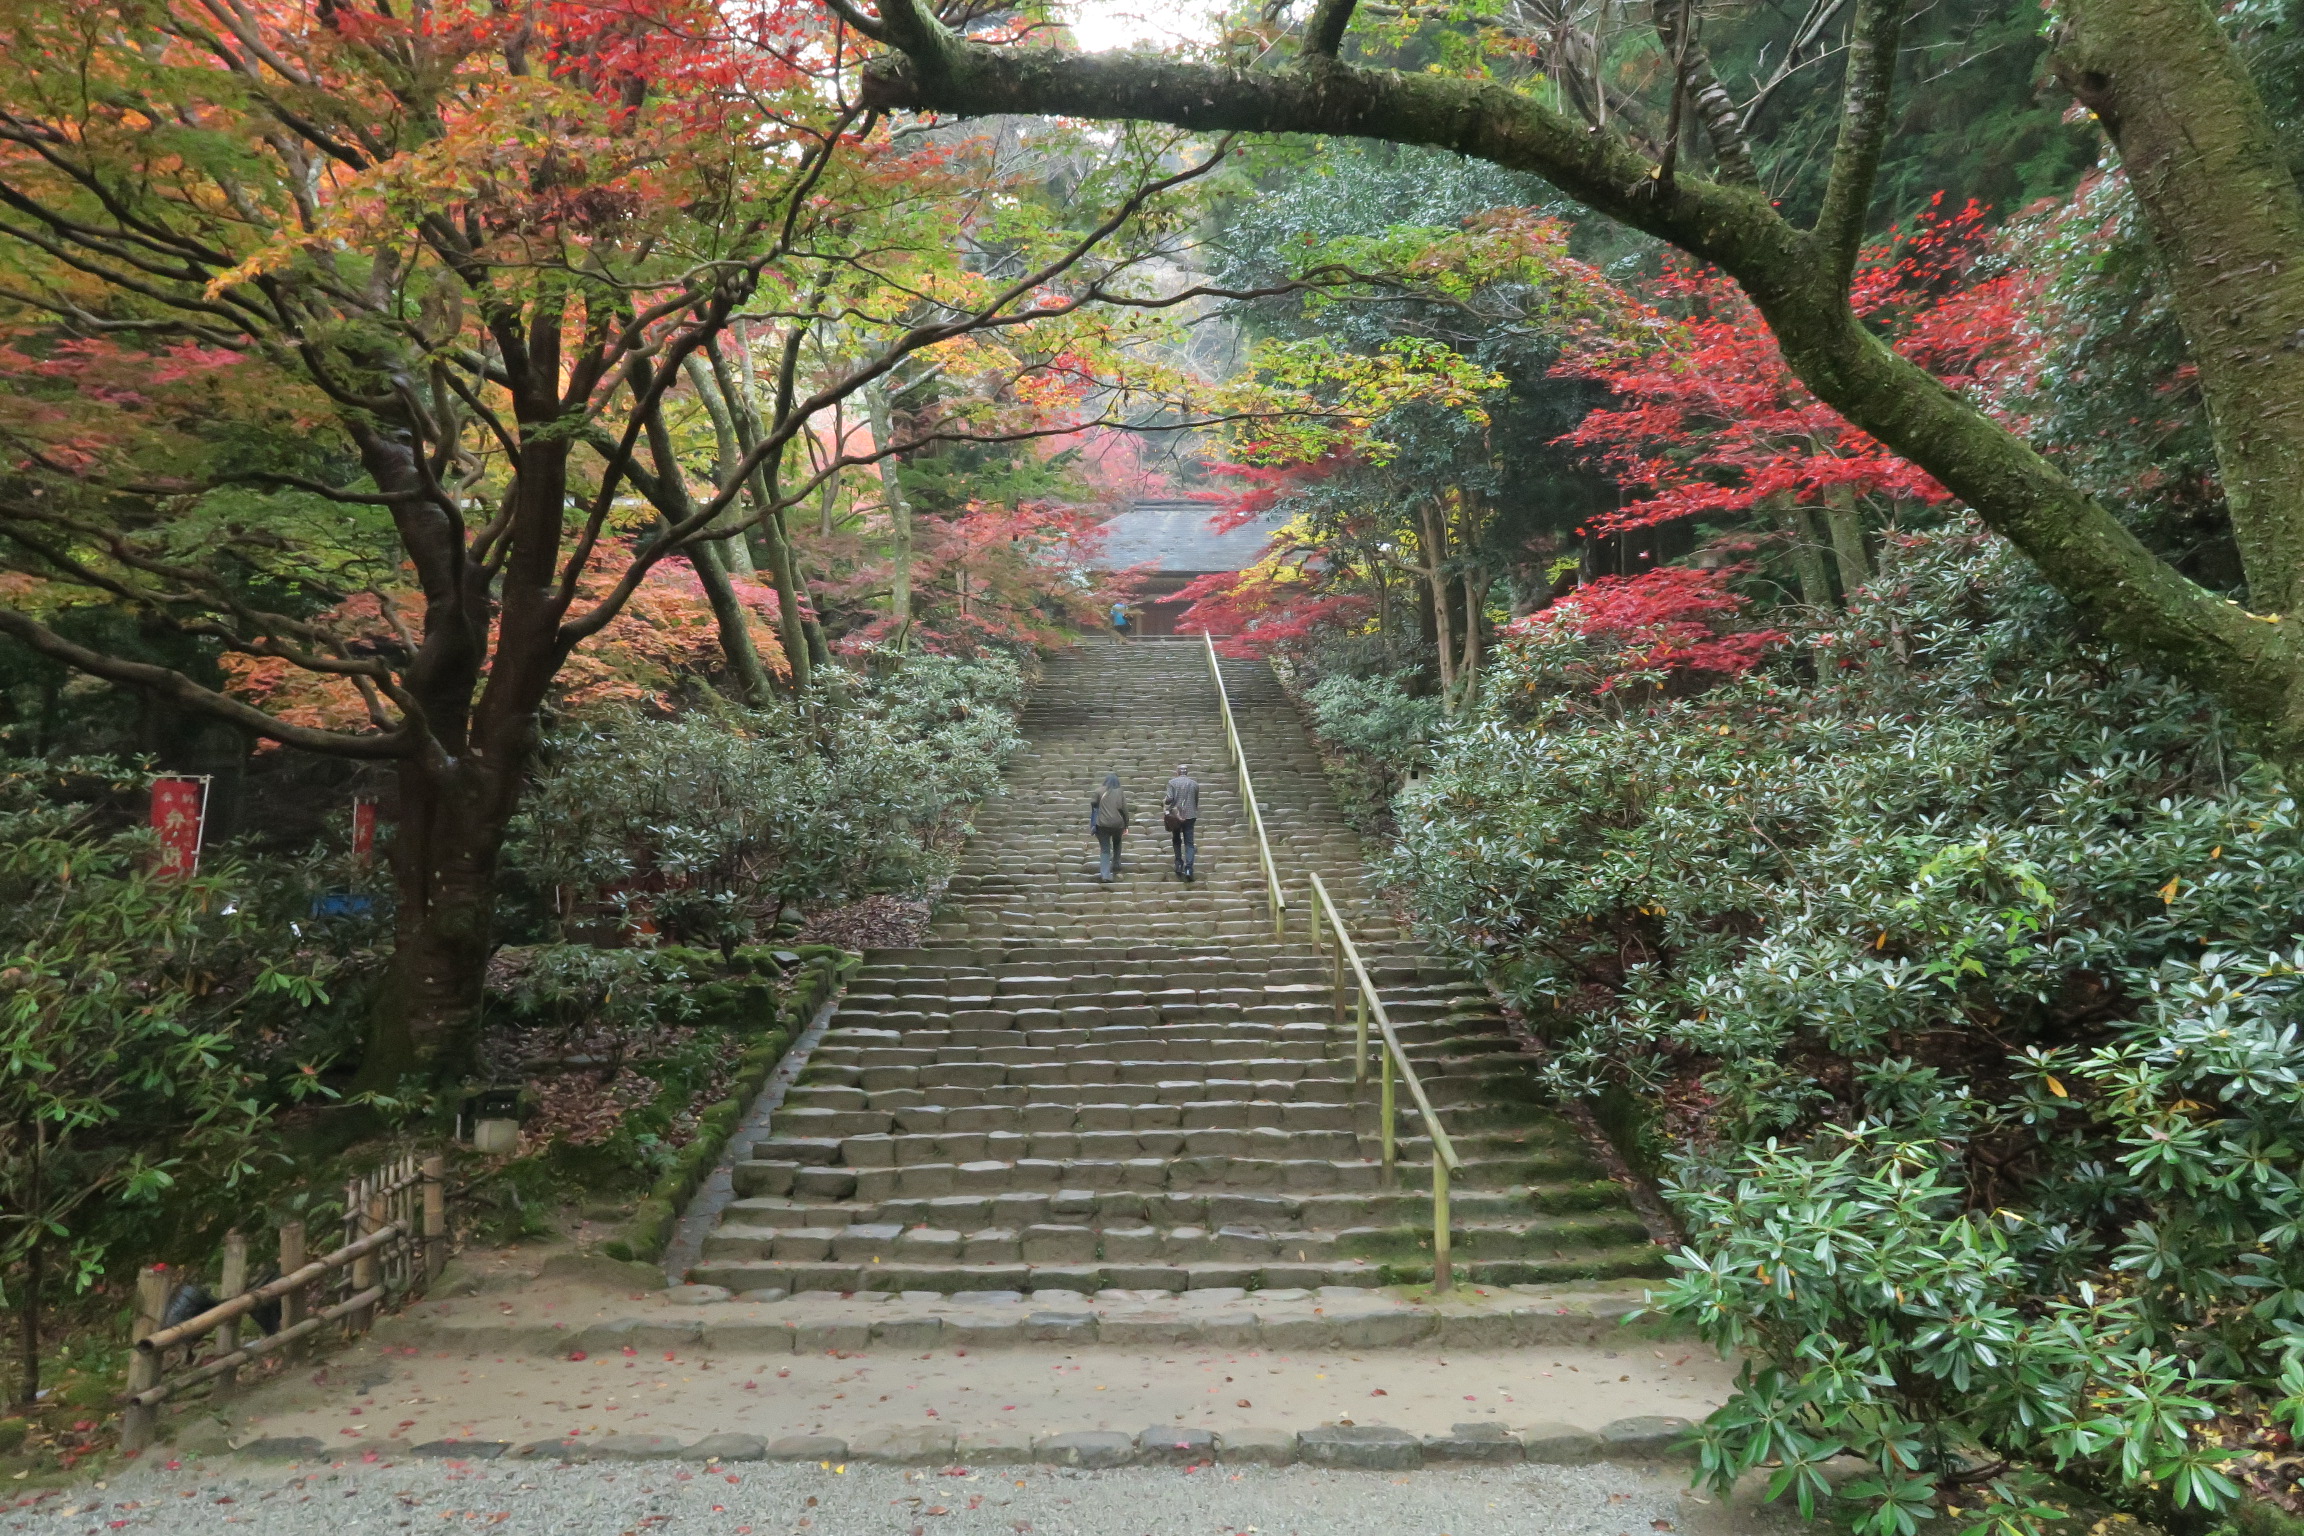 室生寺の名所のひとつ鎧坂。鎧坂というのは石段が編み上げた鎧の様に見えることから呼ばれています。